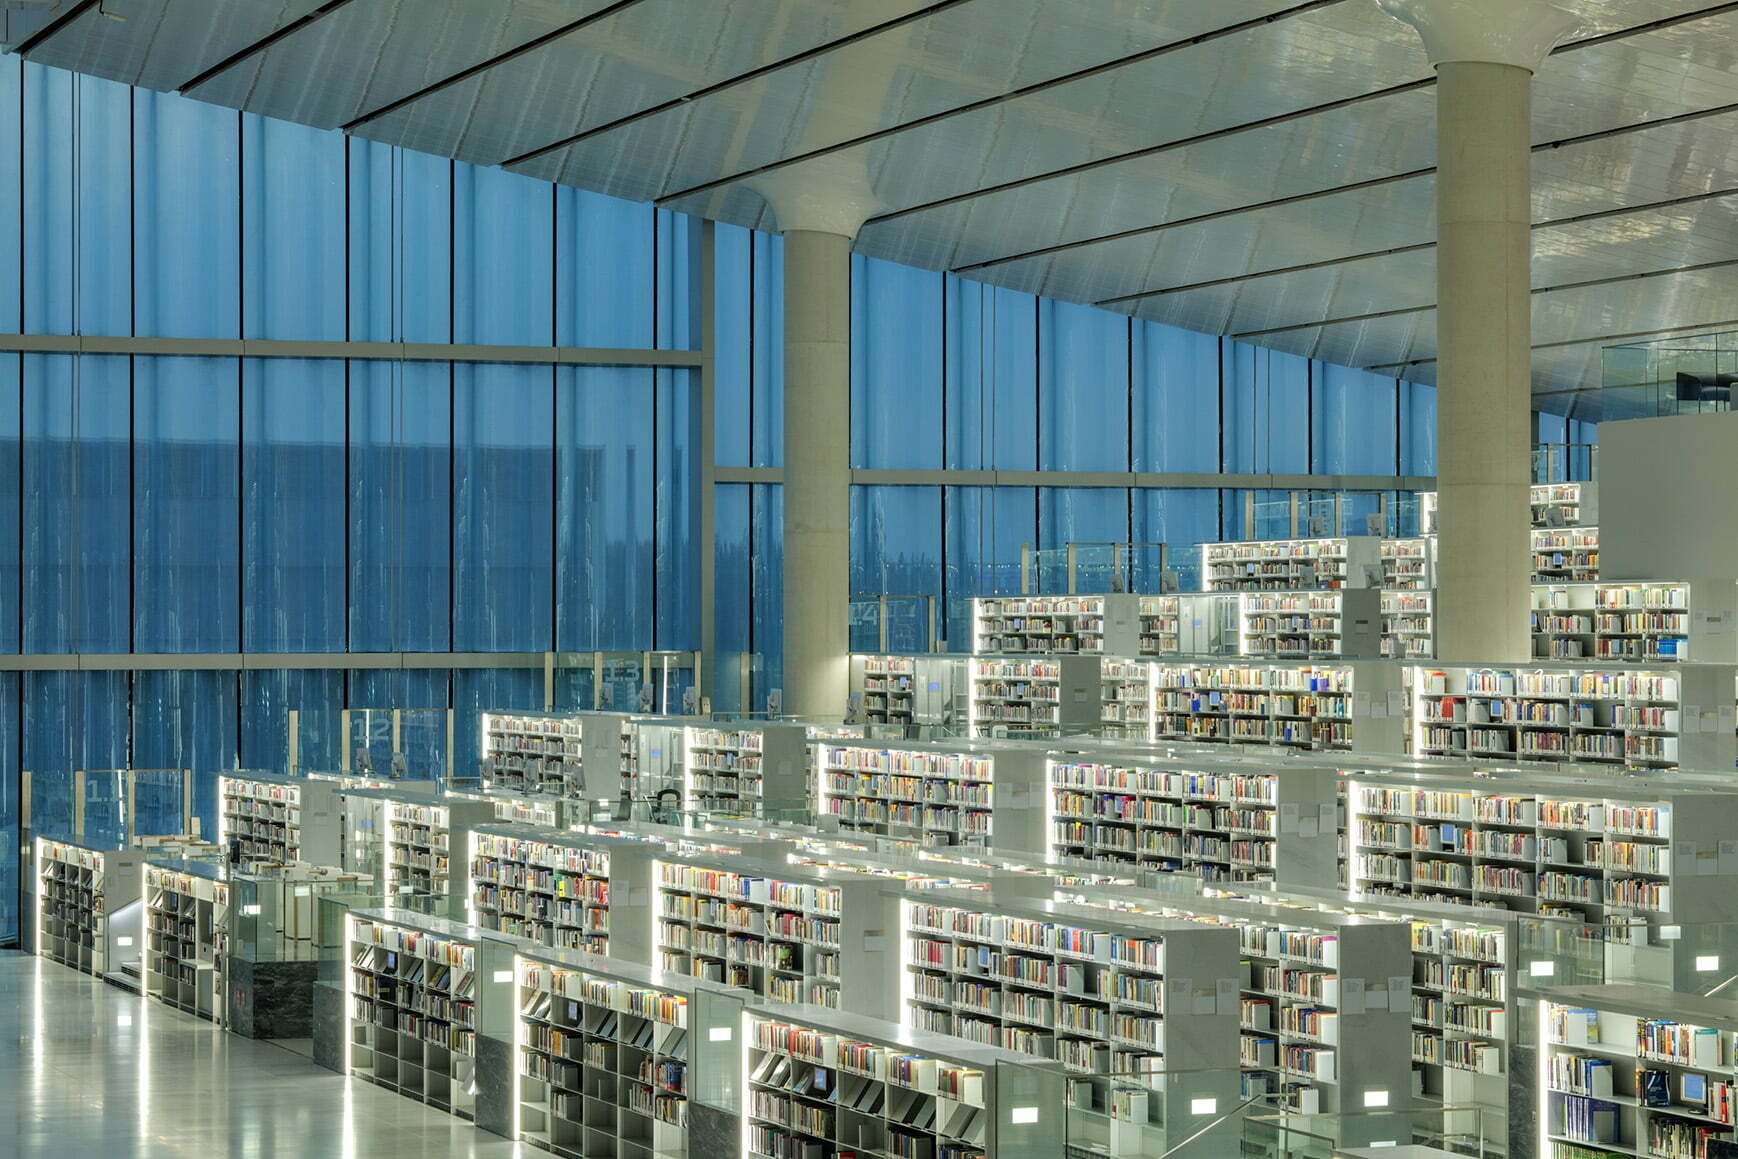 Qatar Foundation - Qatar National Library